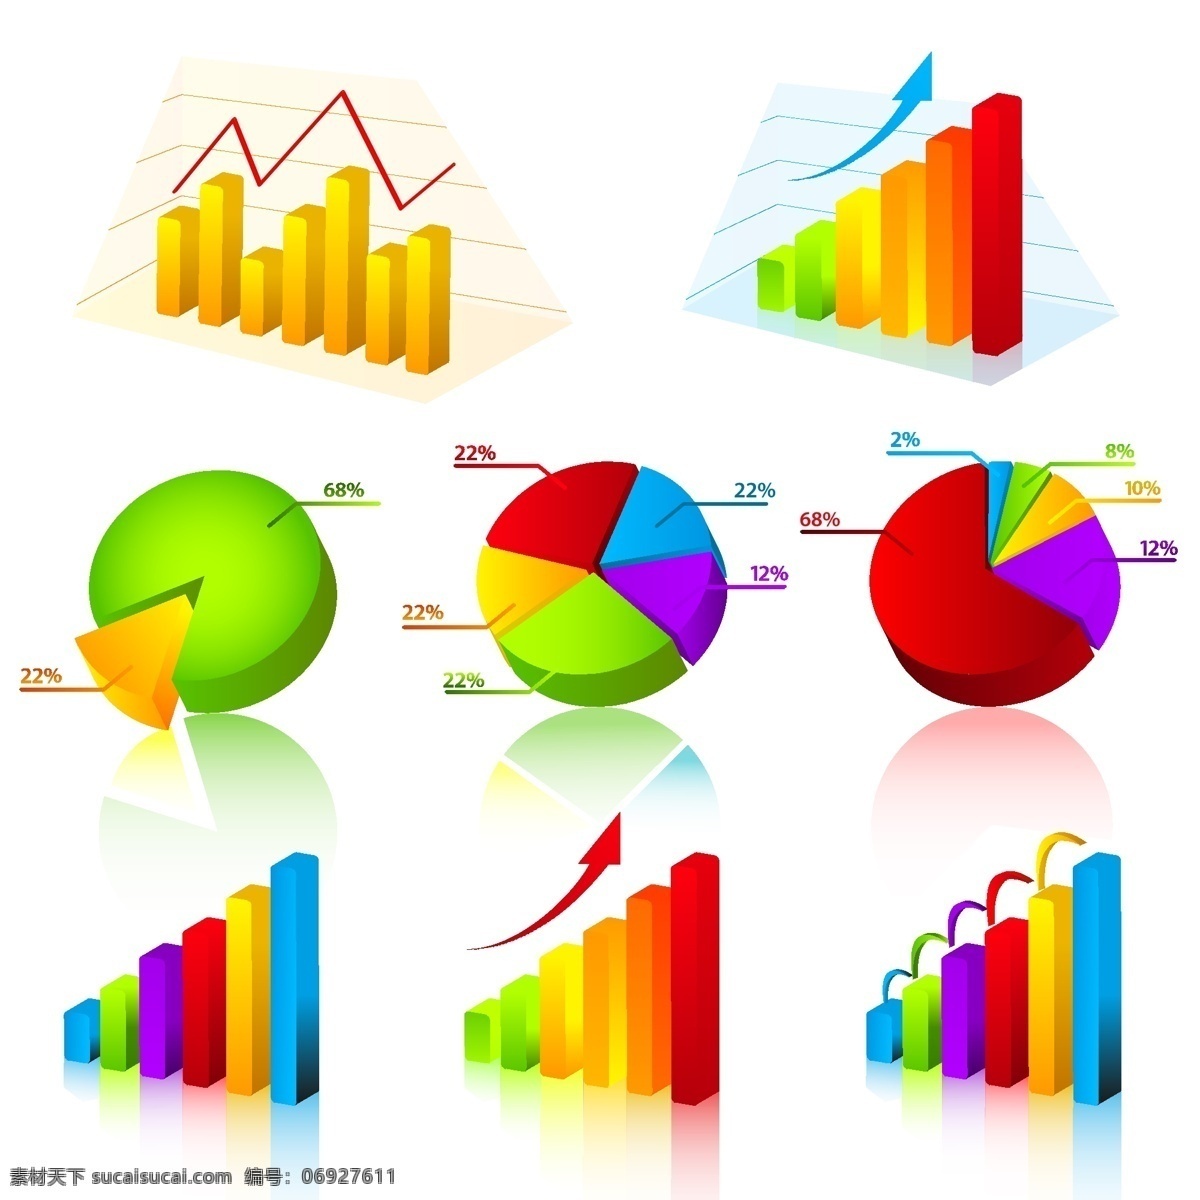 数据统计 主题 矢量 饼图 分析 立体 曲线图 趋势 商业 上升 矢量素材 数据 统计 图表 圆饼 走势 lily